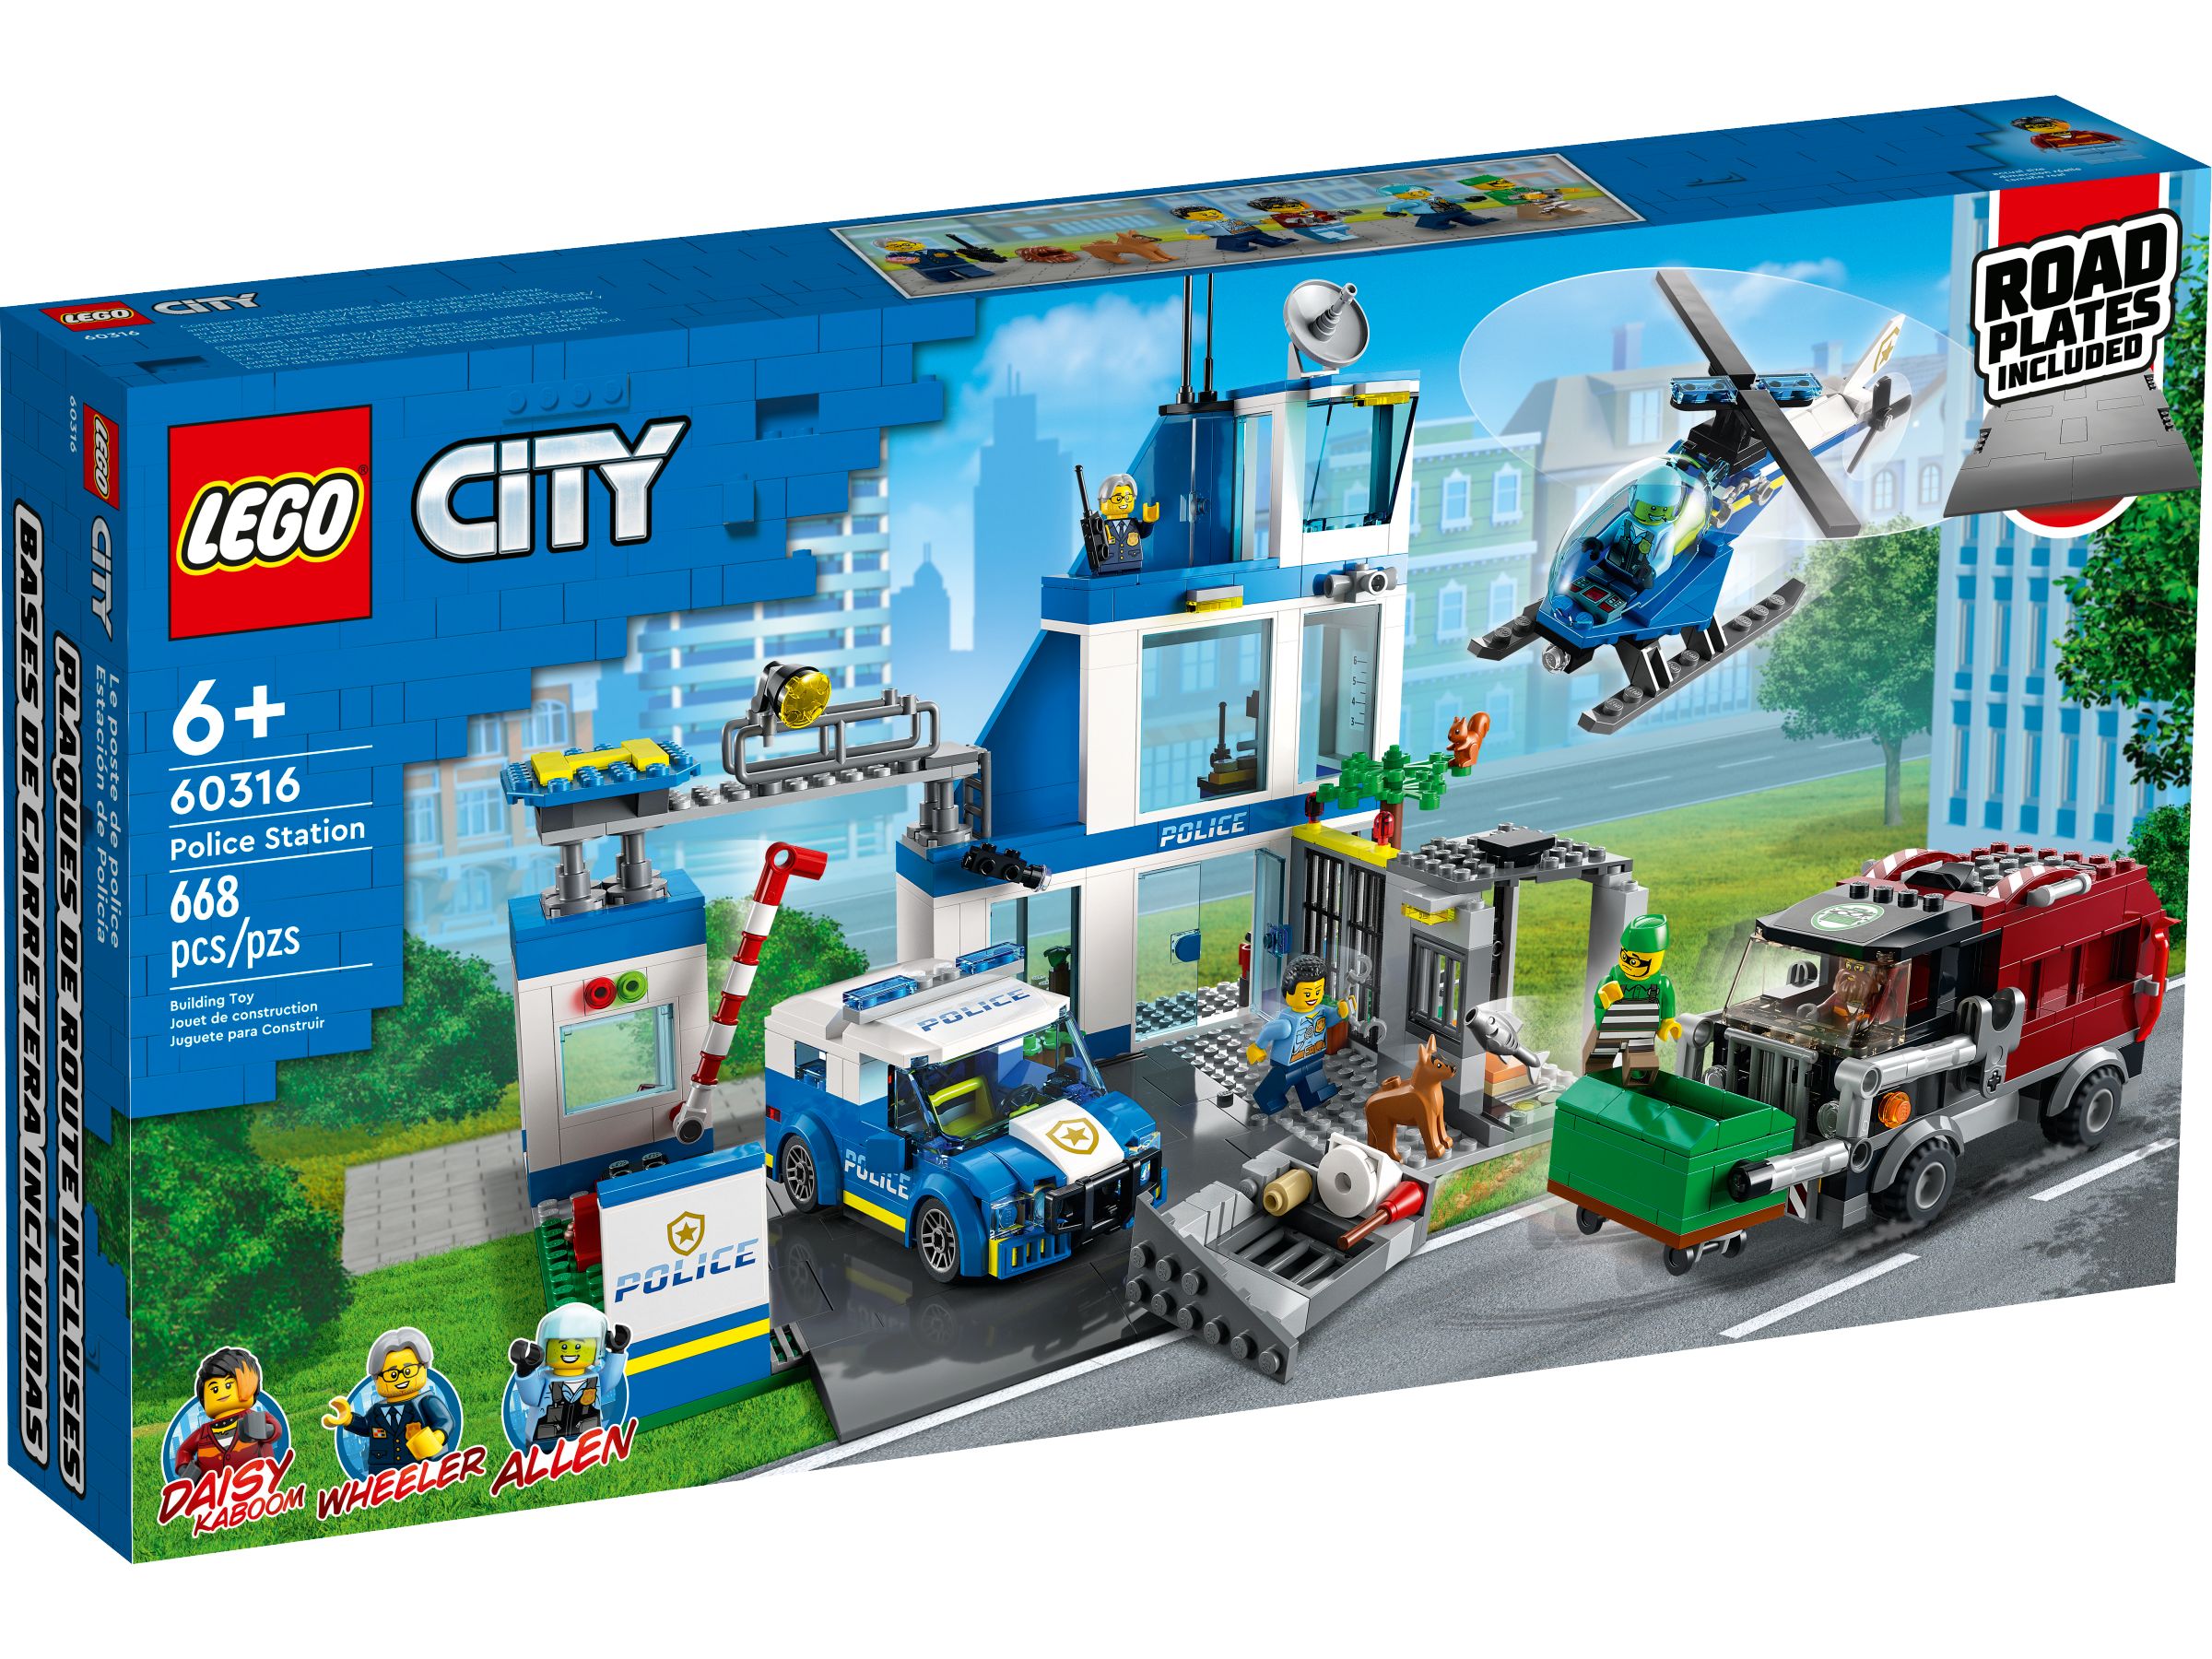 LEGO City 60316 Polizeistation LEGO_60316_alt1.jpg